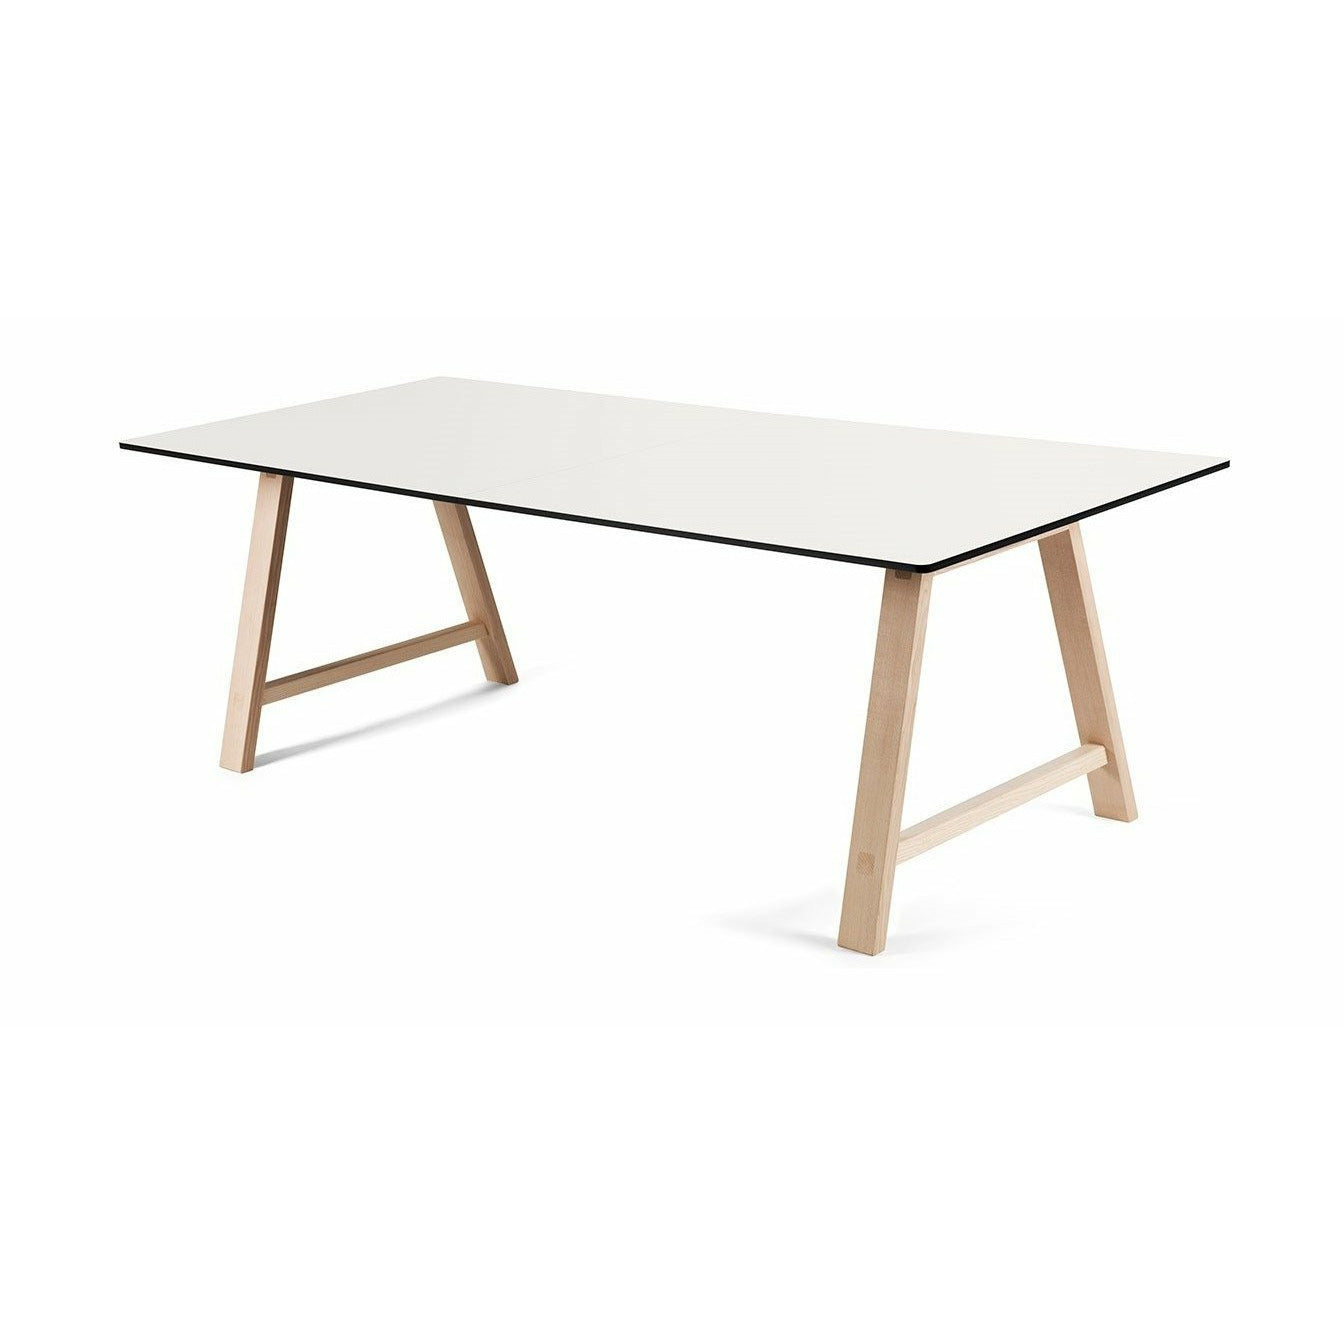 Table extensible des meubles Andersen T1, stratifié blanc, chêne savonned, 160 cm